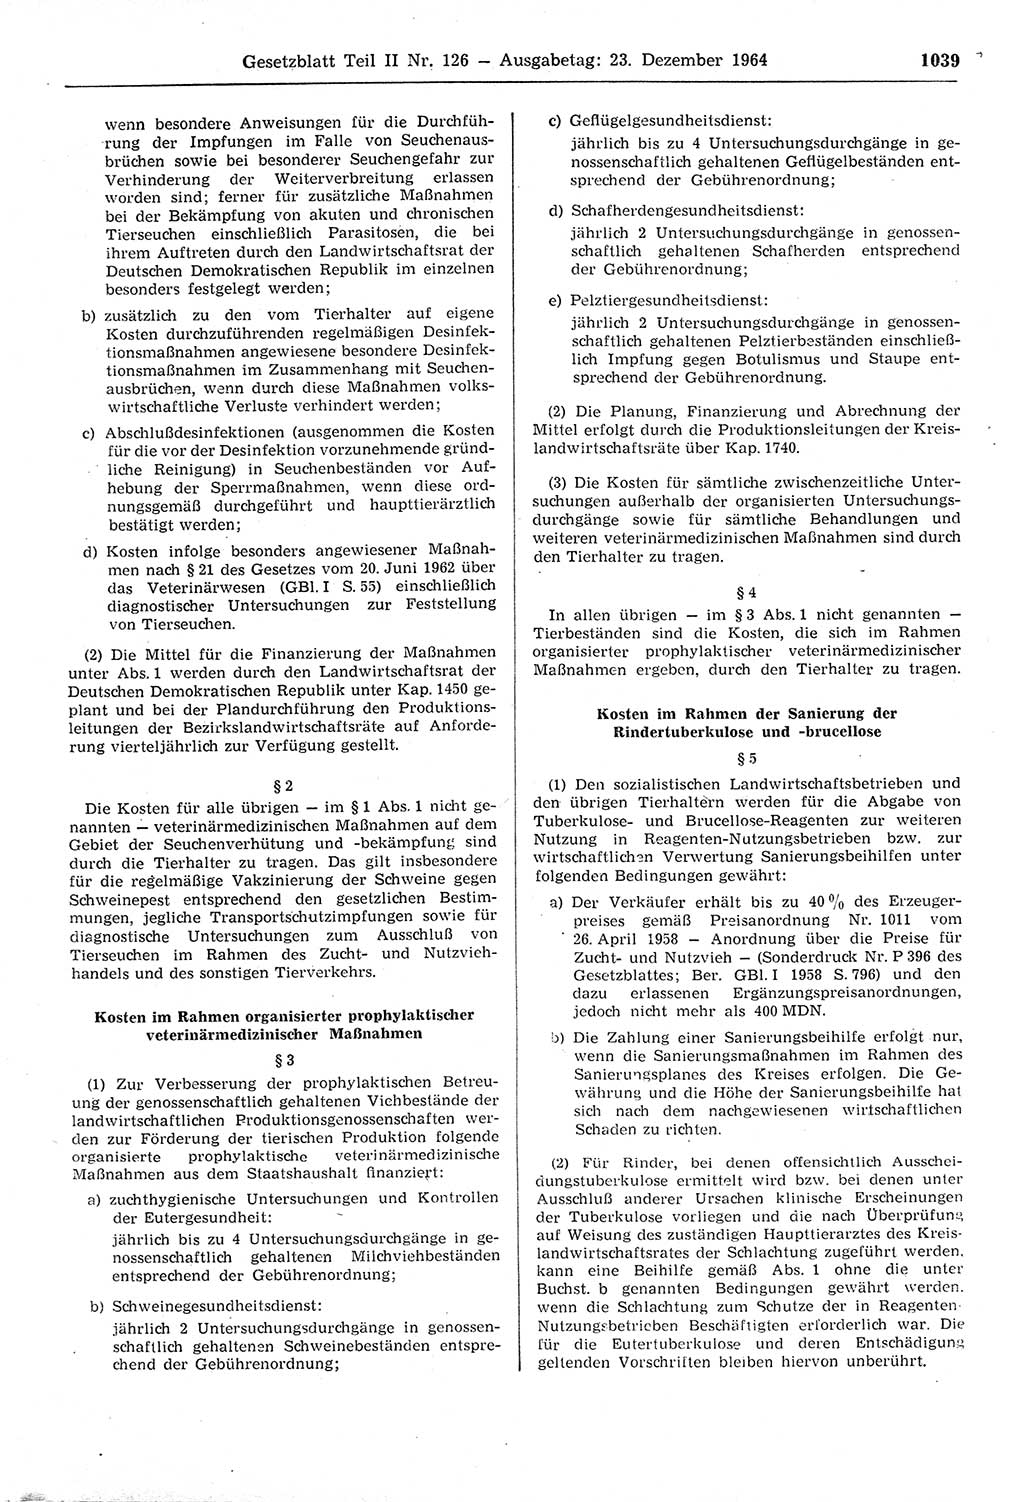 Gesetzblatt (GBl.) der Deutschen Demokratischen Republik (DDR) Teil ⅠⅠ 1964, Seite 1039 (GBl. DDR ⅠⅠ 1964, S. 1039)